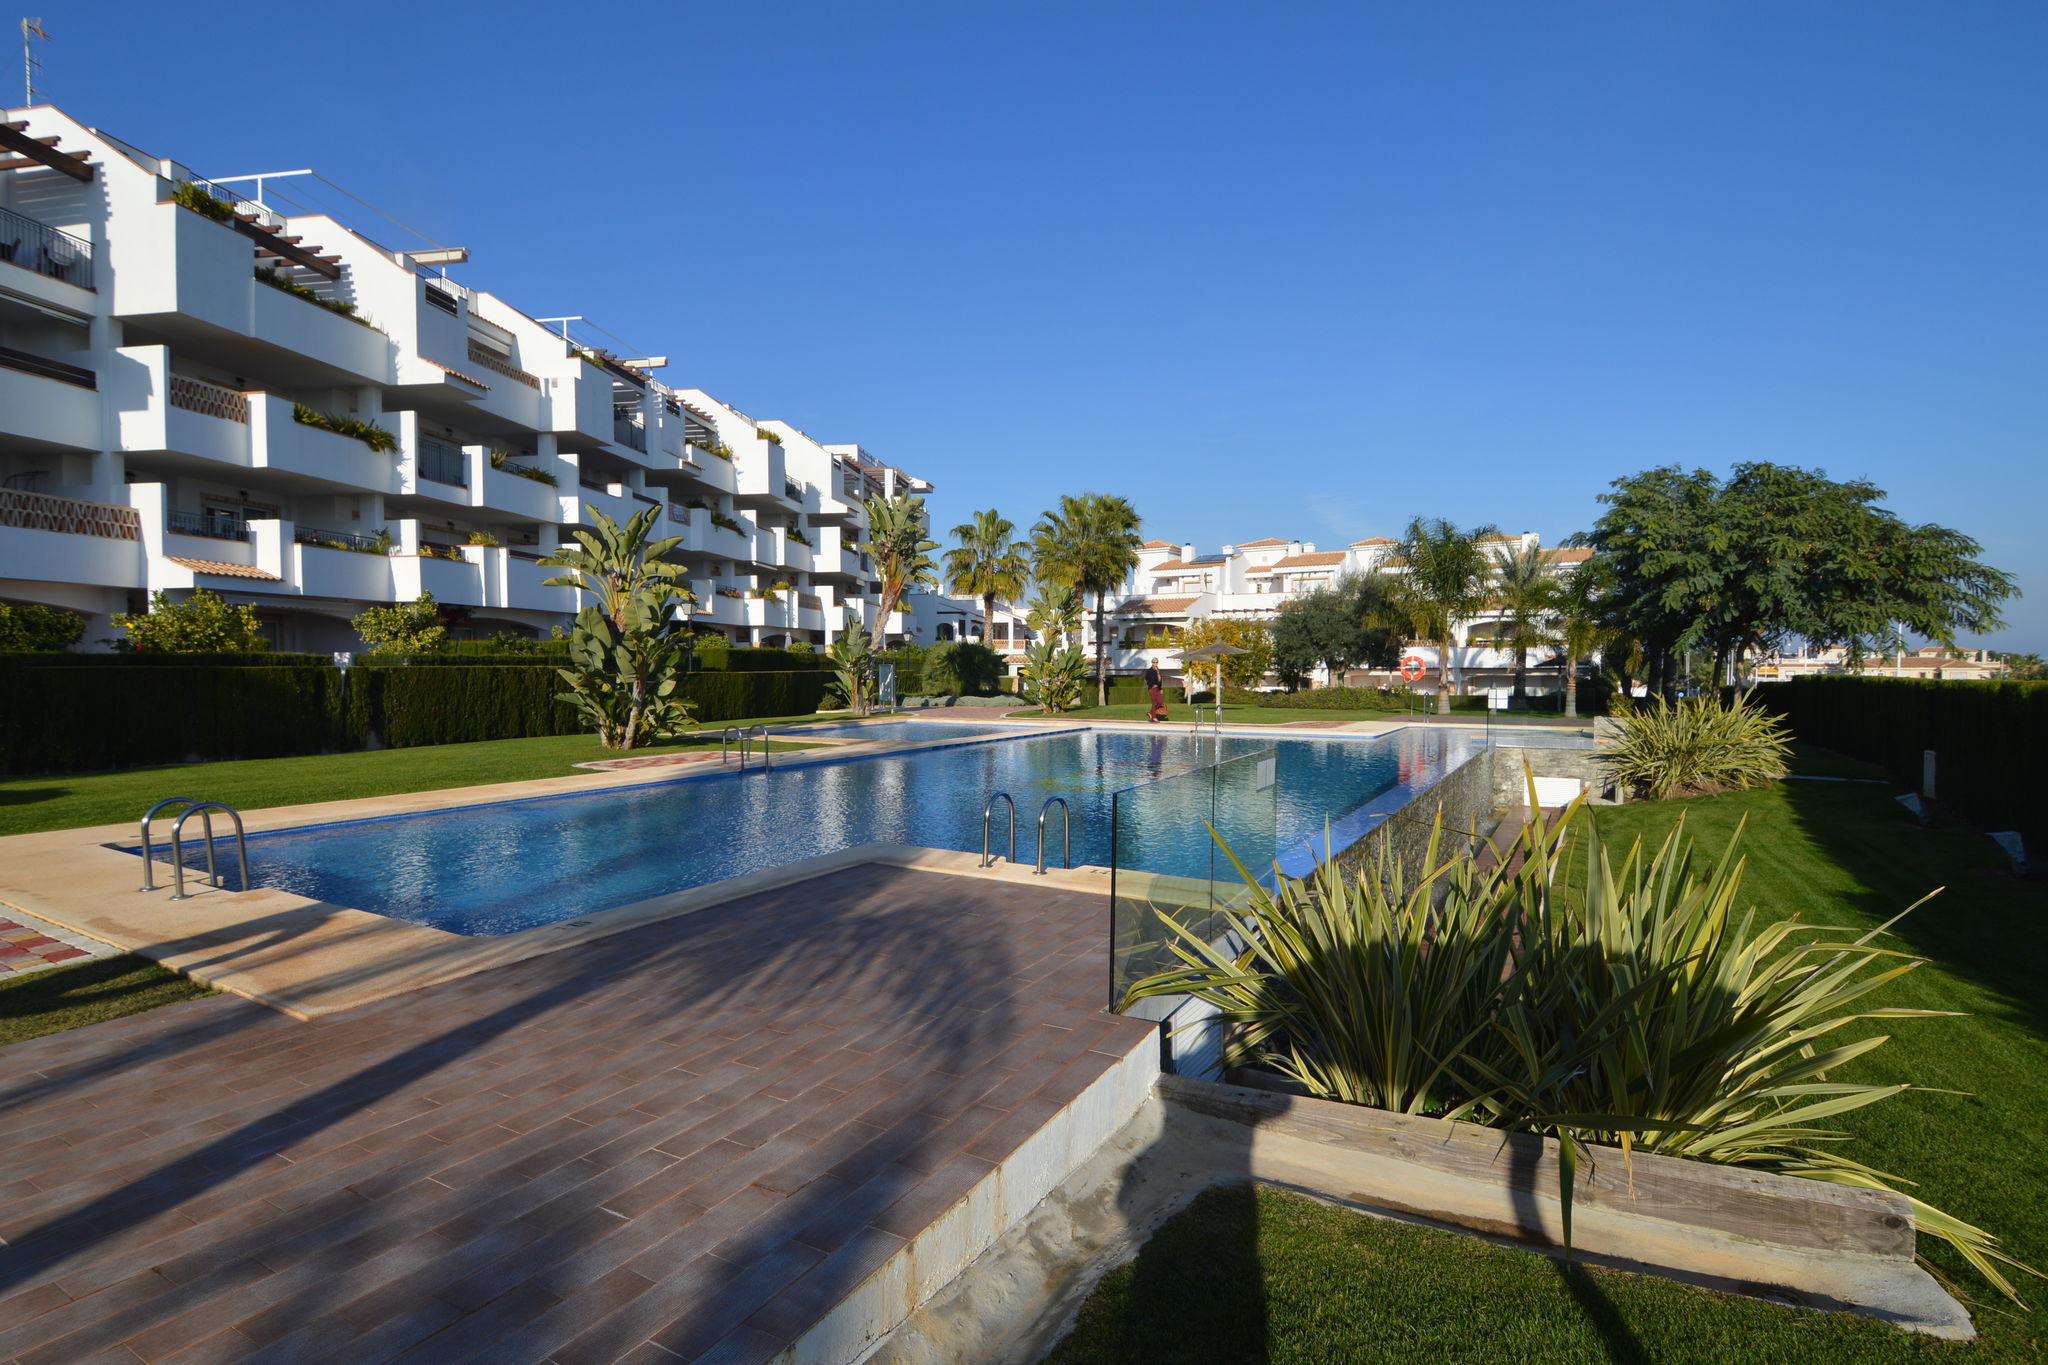 Appartement moderne avec piscine près de la mer à Valence